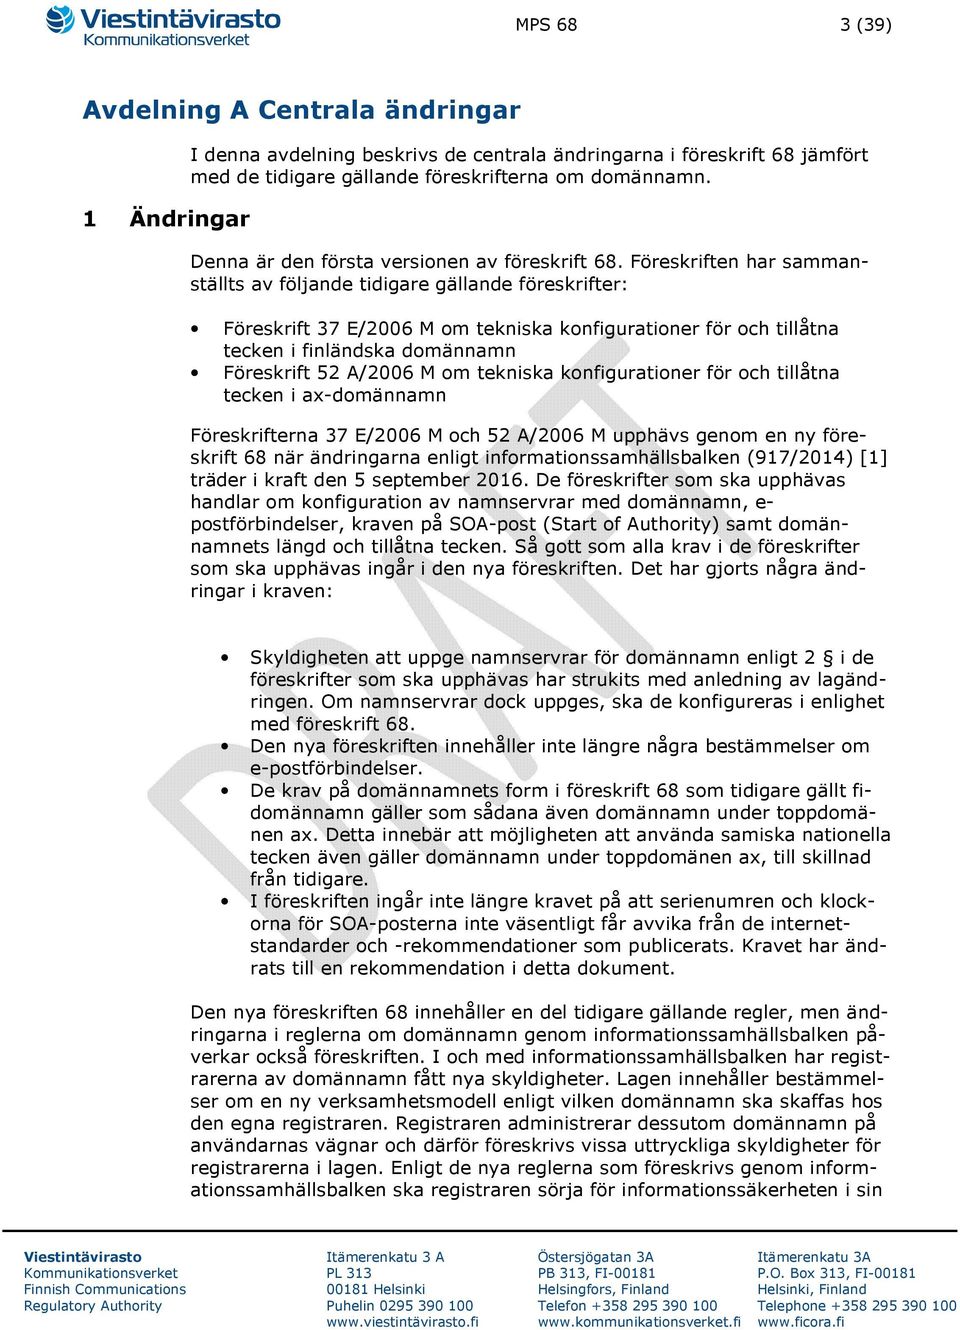 Föreskriften har sammanställts av följande tidigare gällande föreskrifter: Föreskrift 37 E/2006 M om tekniska konfigurationer för och tillåtna tecken i finländska domännamn Föreskrift 52 A/2006 M om